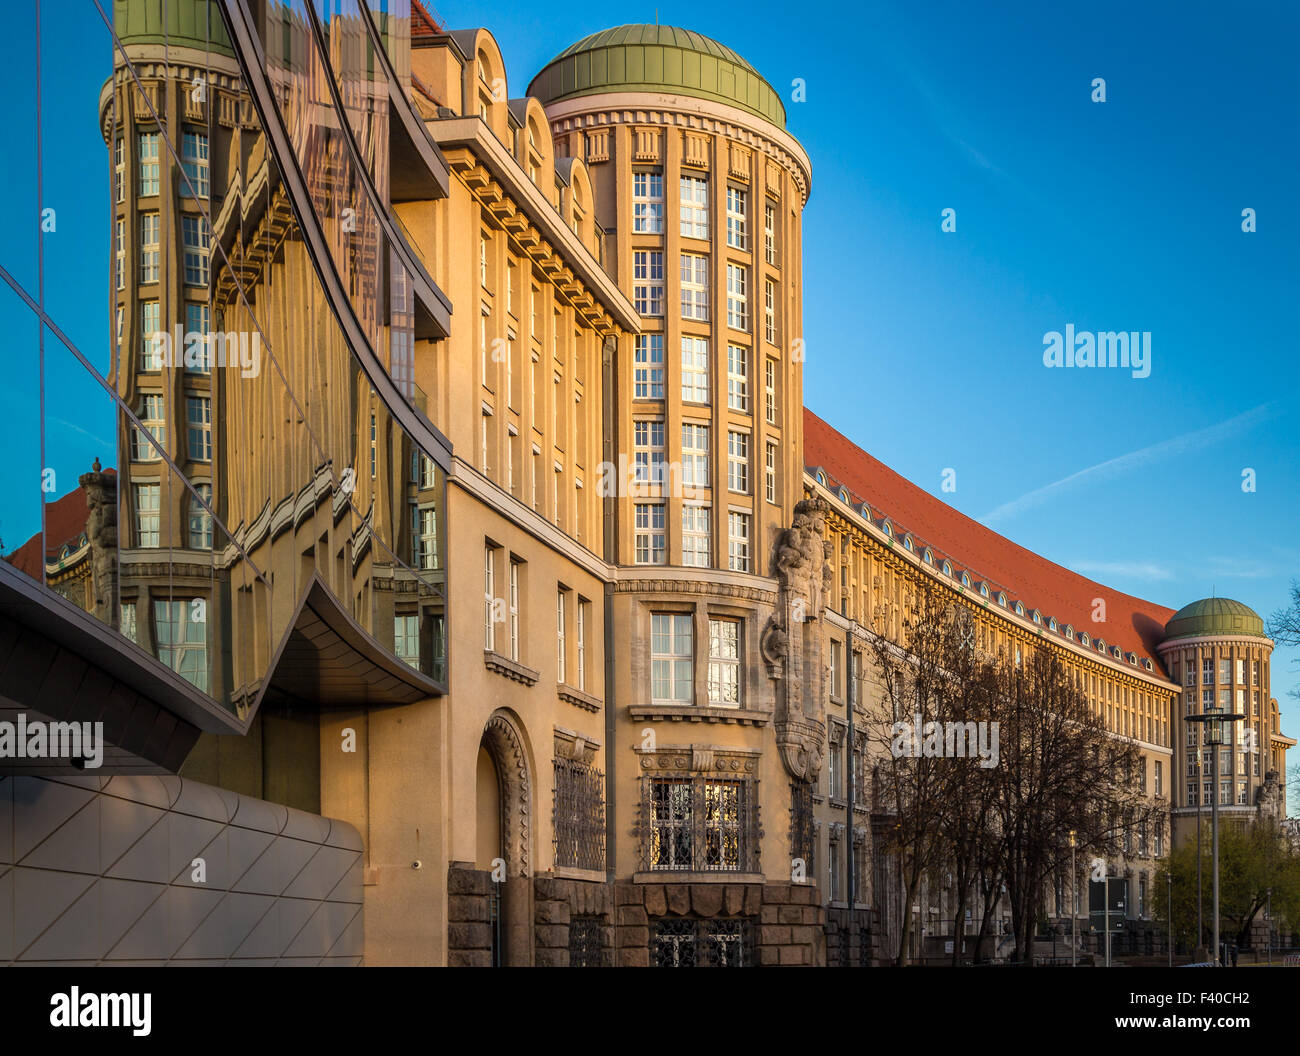 Biblioteca nacional alemana fotografías e imágenes de alta resolución -  Alamy